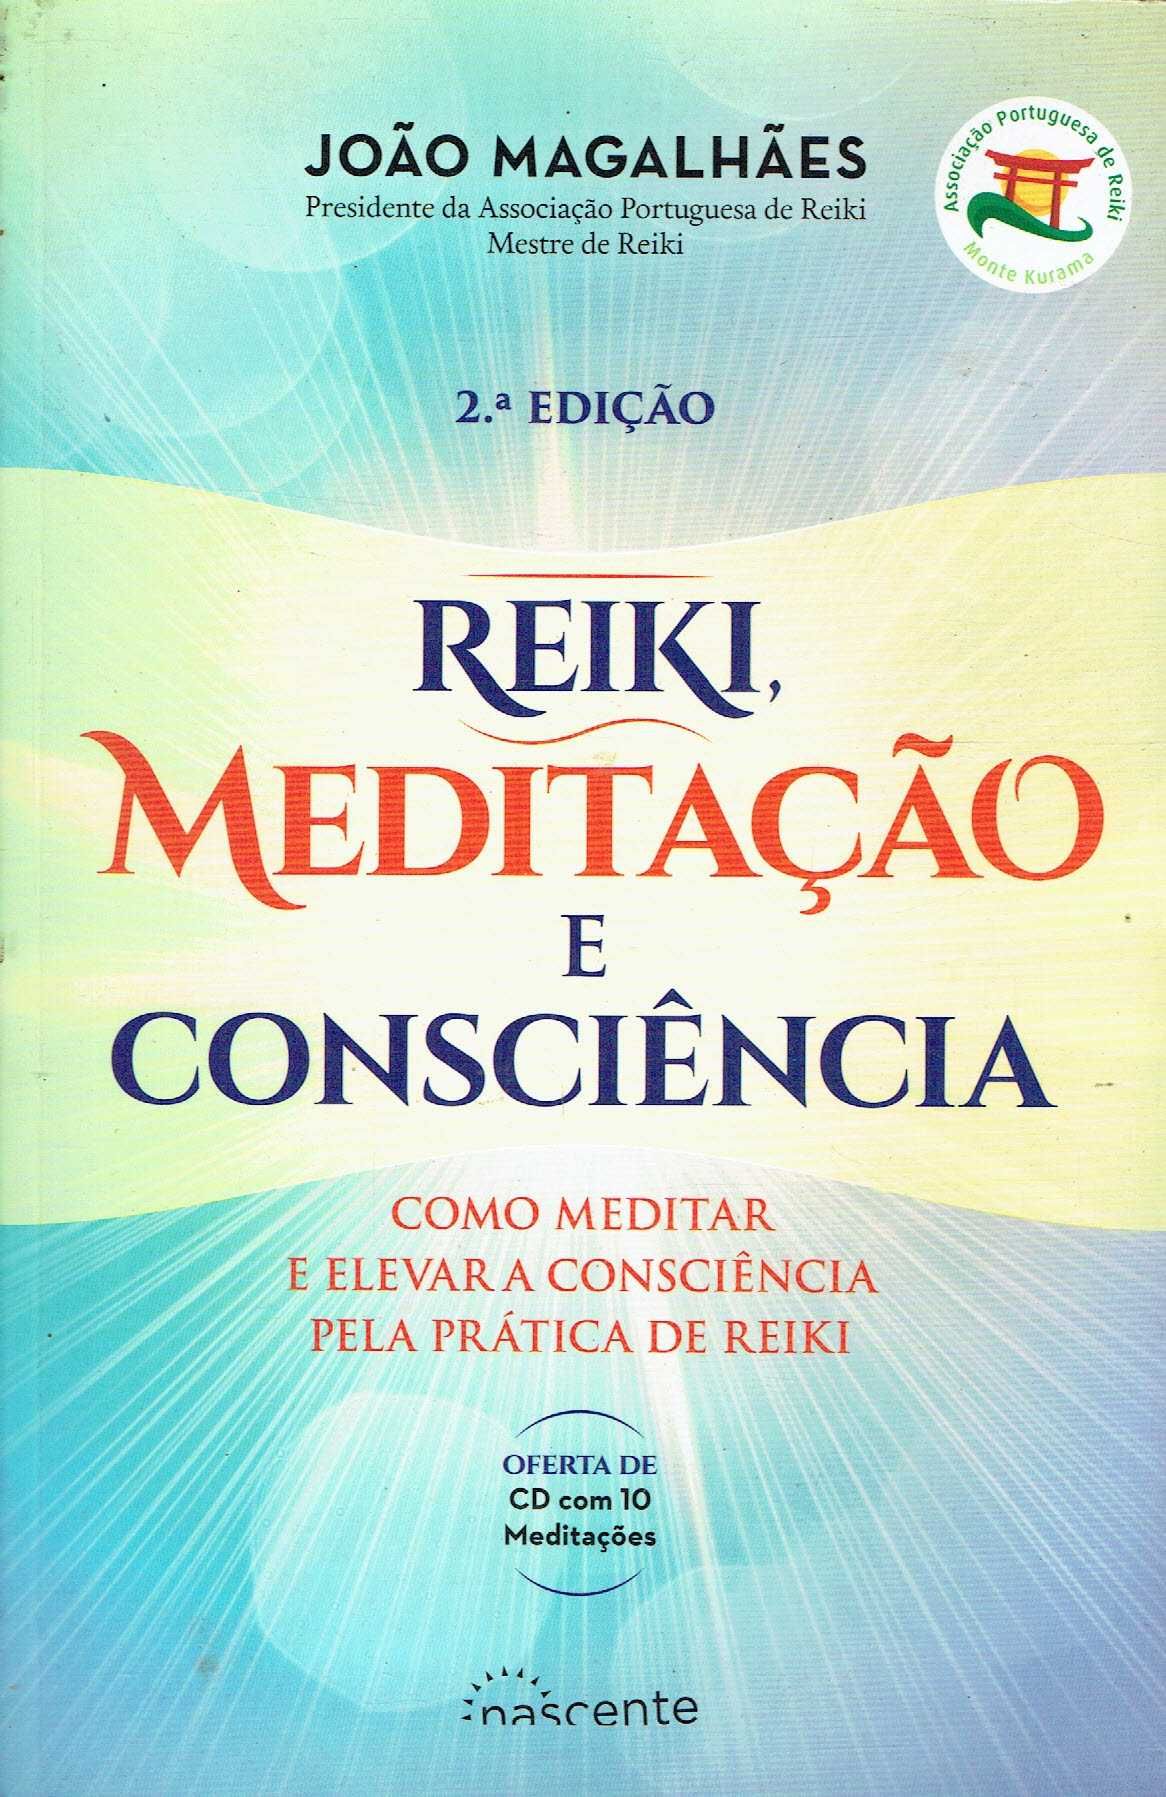 15232

Reiki, Meditação e Consciência
de João Magalhães